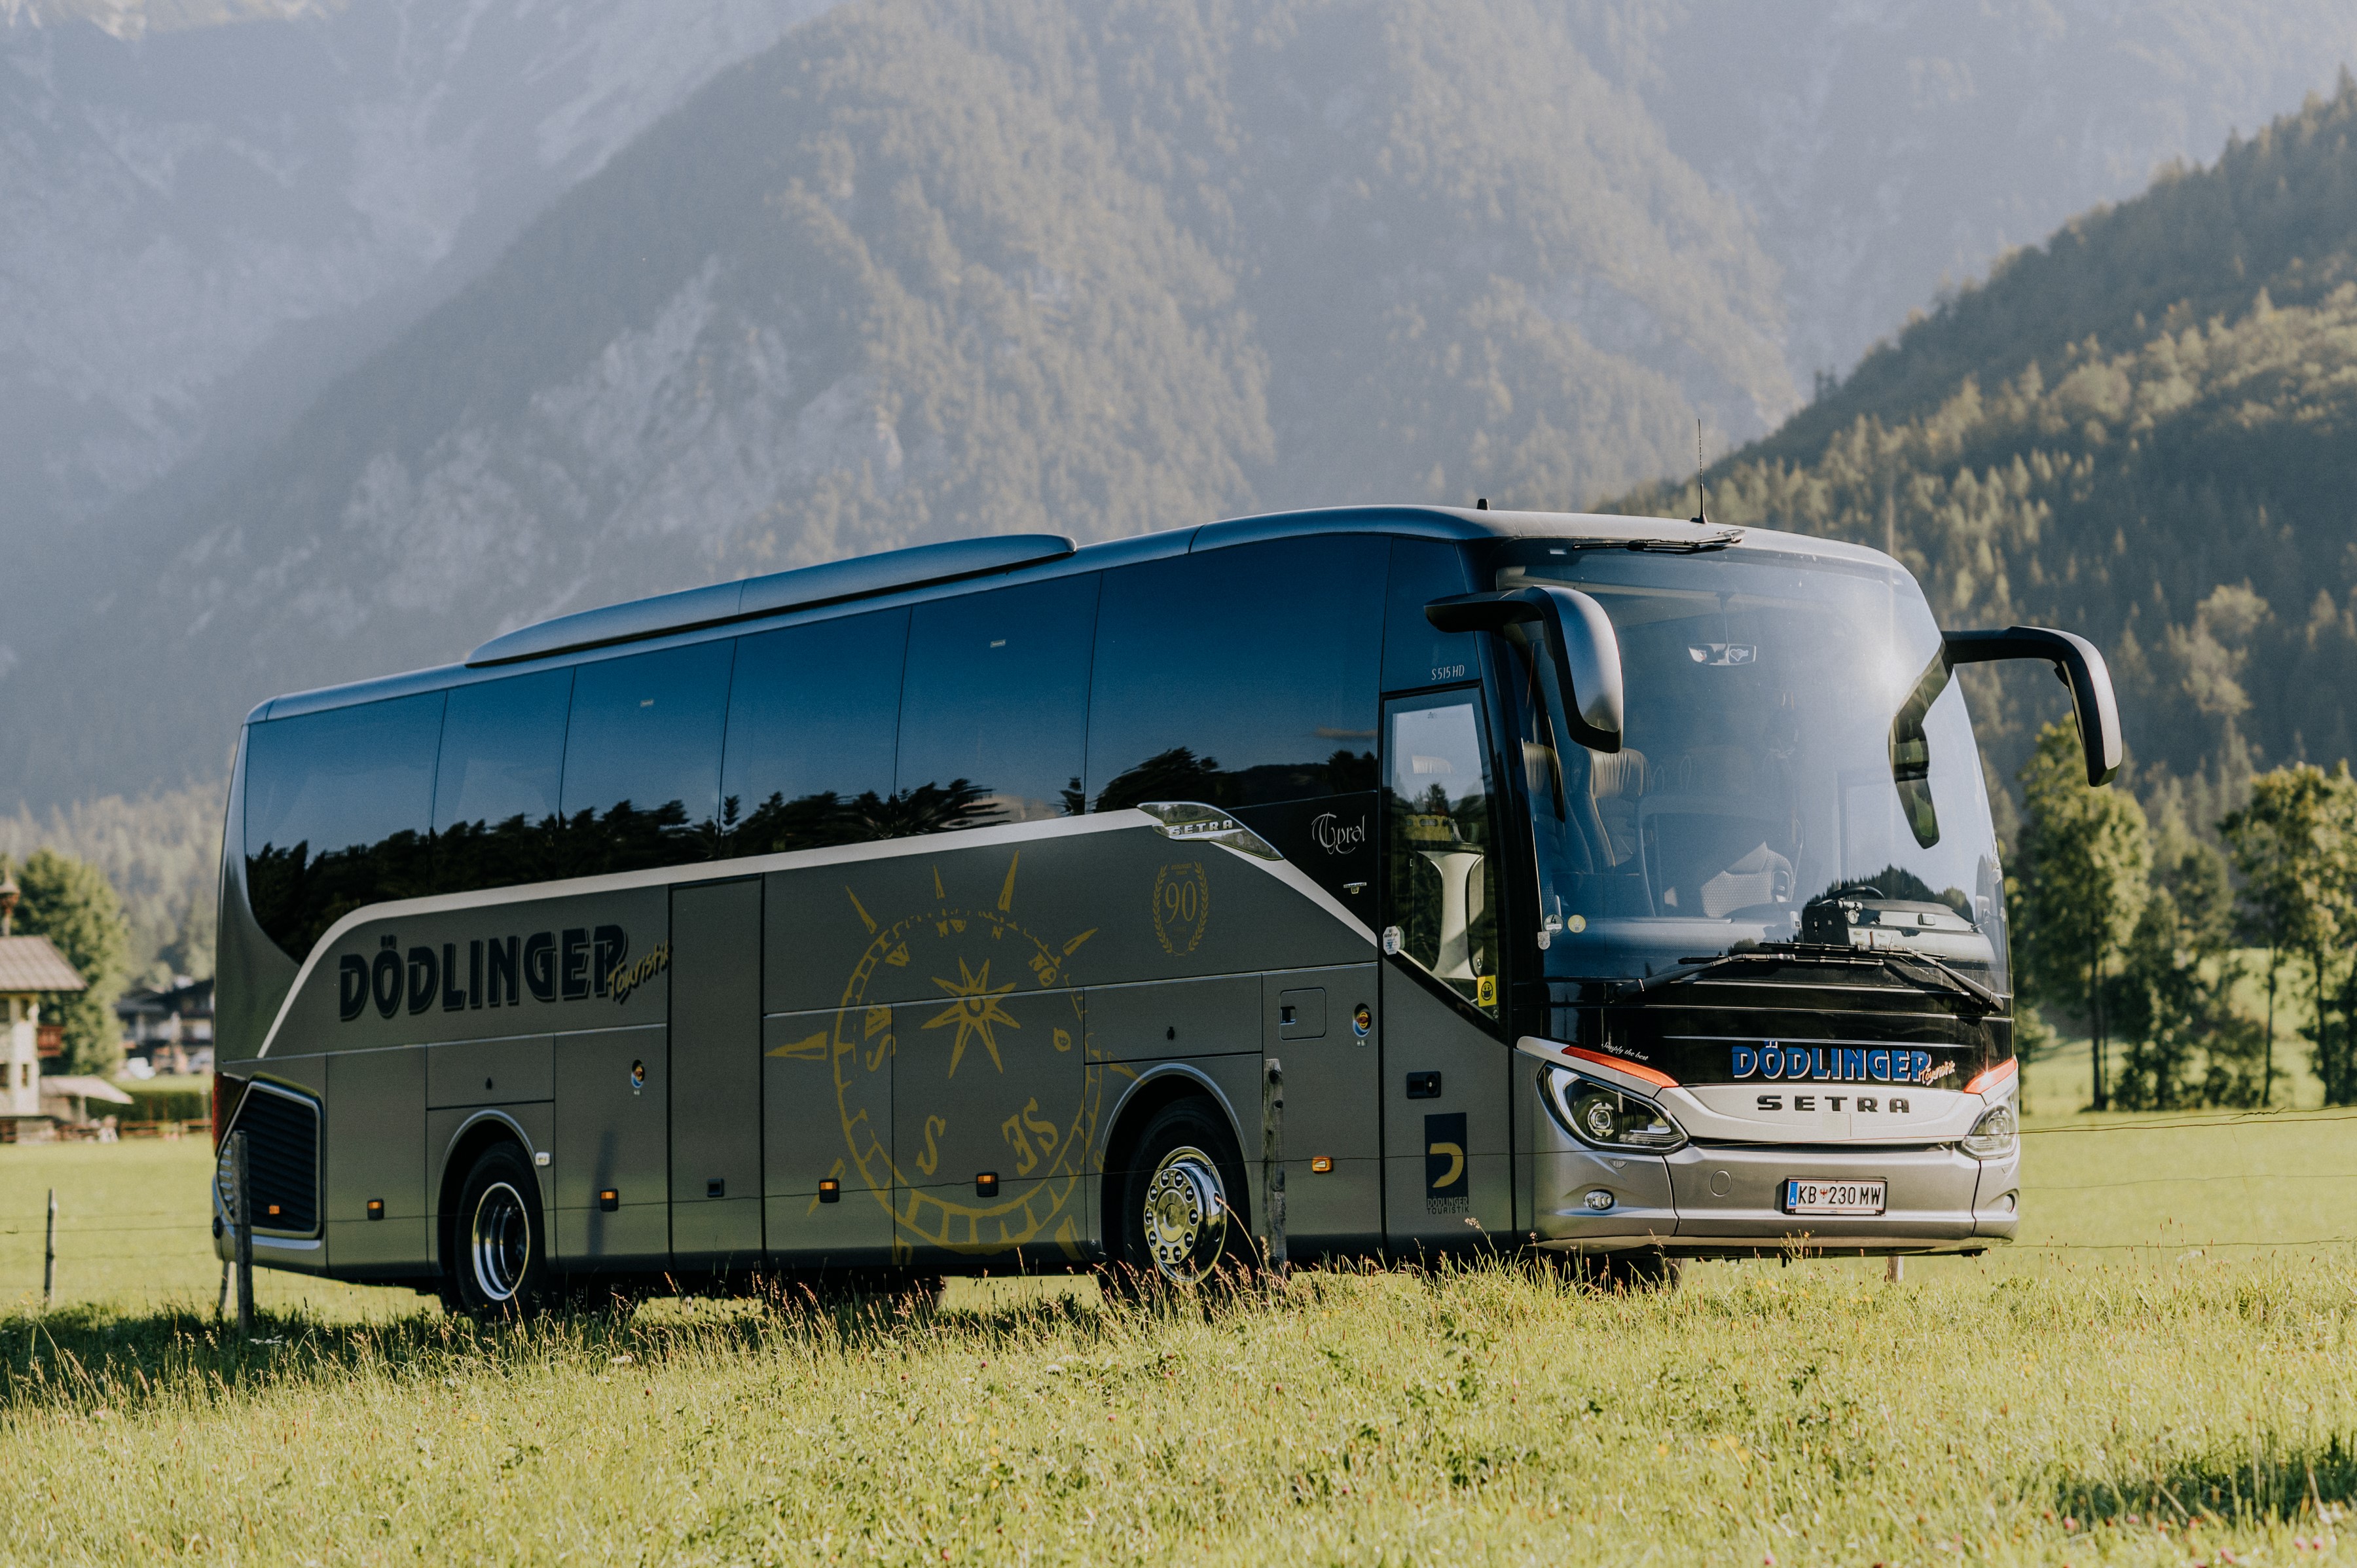 Seit 2021 hat die Dödlinger Touristik als erstes Busunternehmen und Reisebüro Westösterreichs die Lizenz, nachhaltige Reisen mit dem Österreichischen Umweltzeichen zu zertifizieren, damit ein Zeichen für den aktiven Umweltschutz zu setzen und das Ziel zu verfolgen, umweltfreundliche Reiseangebote zu schaffen, die zum Klimaschutz beitragen. 